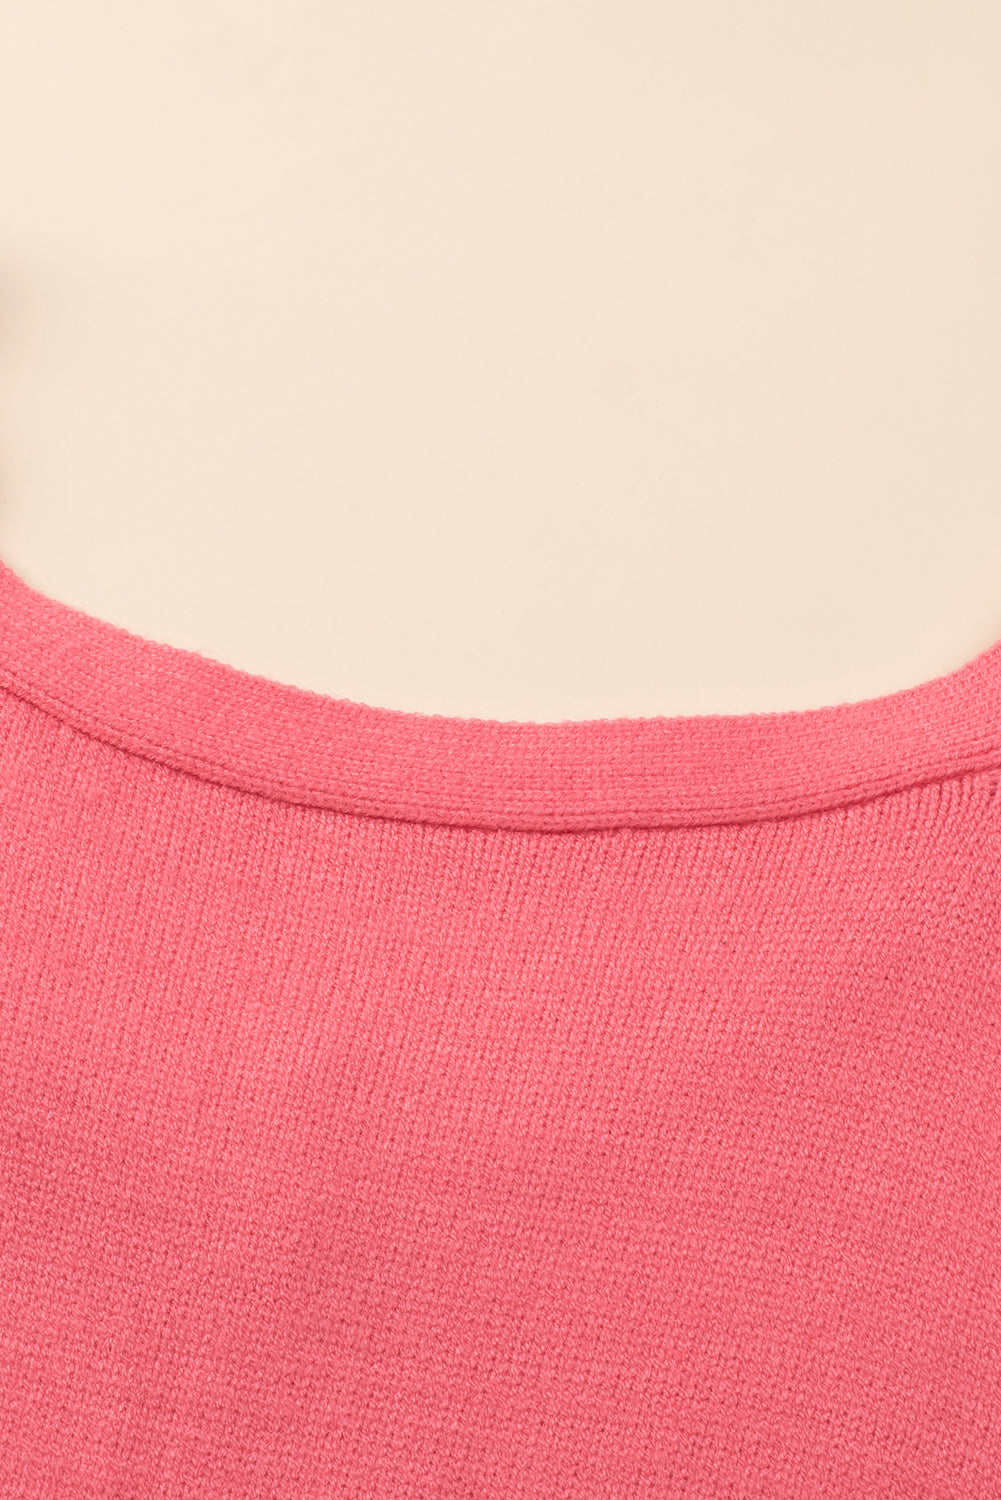 Rosafarbener Plus-Size-Pullover mit tief angesetzter Schulterpartie und V-Ausschnitt